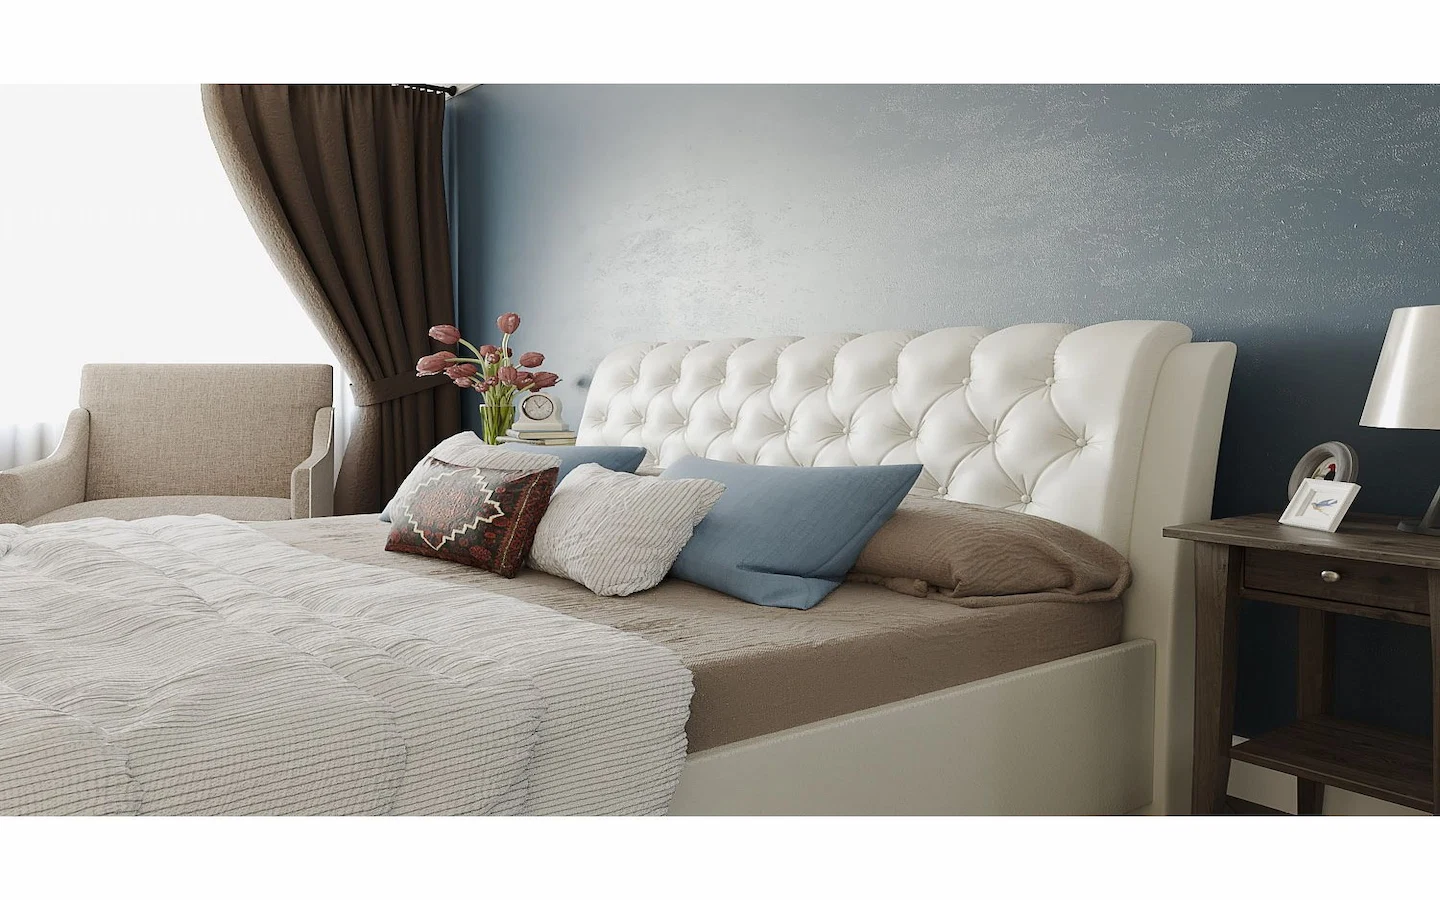 Bed Back Cushion Design